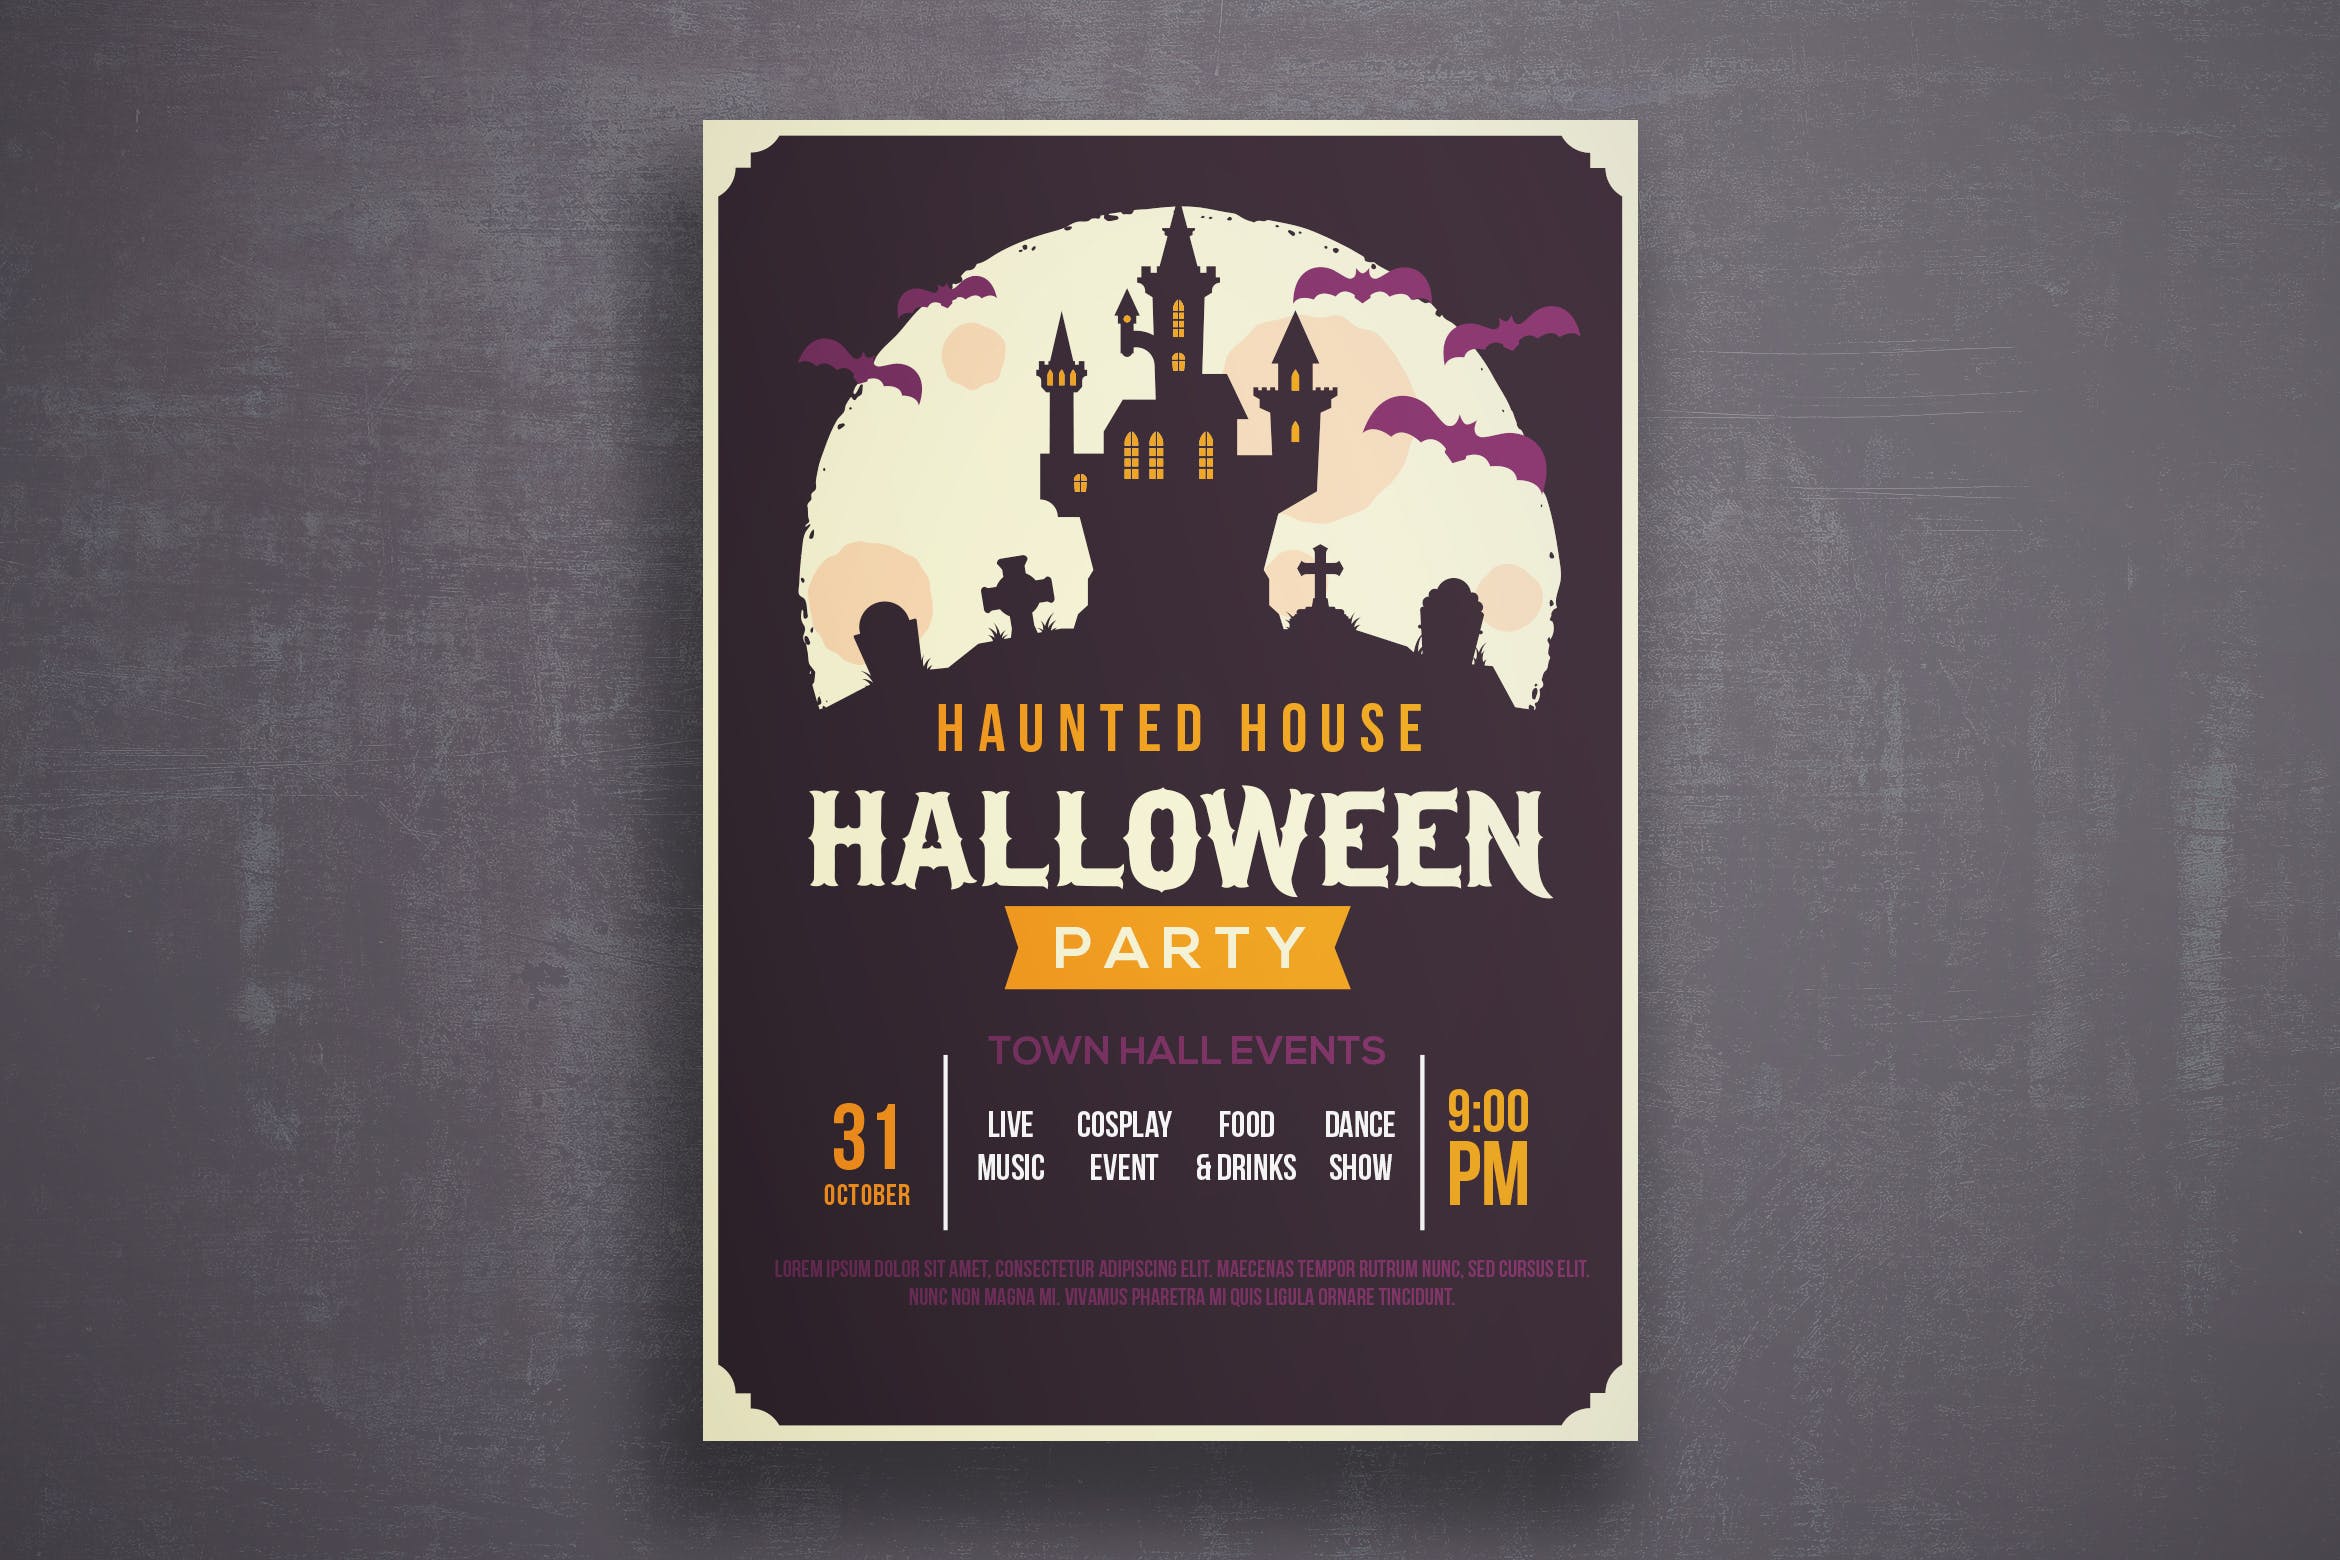 万圣节恐怖之夜活动邀请海报传单素材库精选PSD模板v2 Halloween flyer template插图